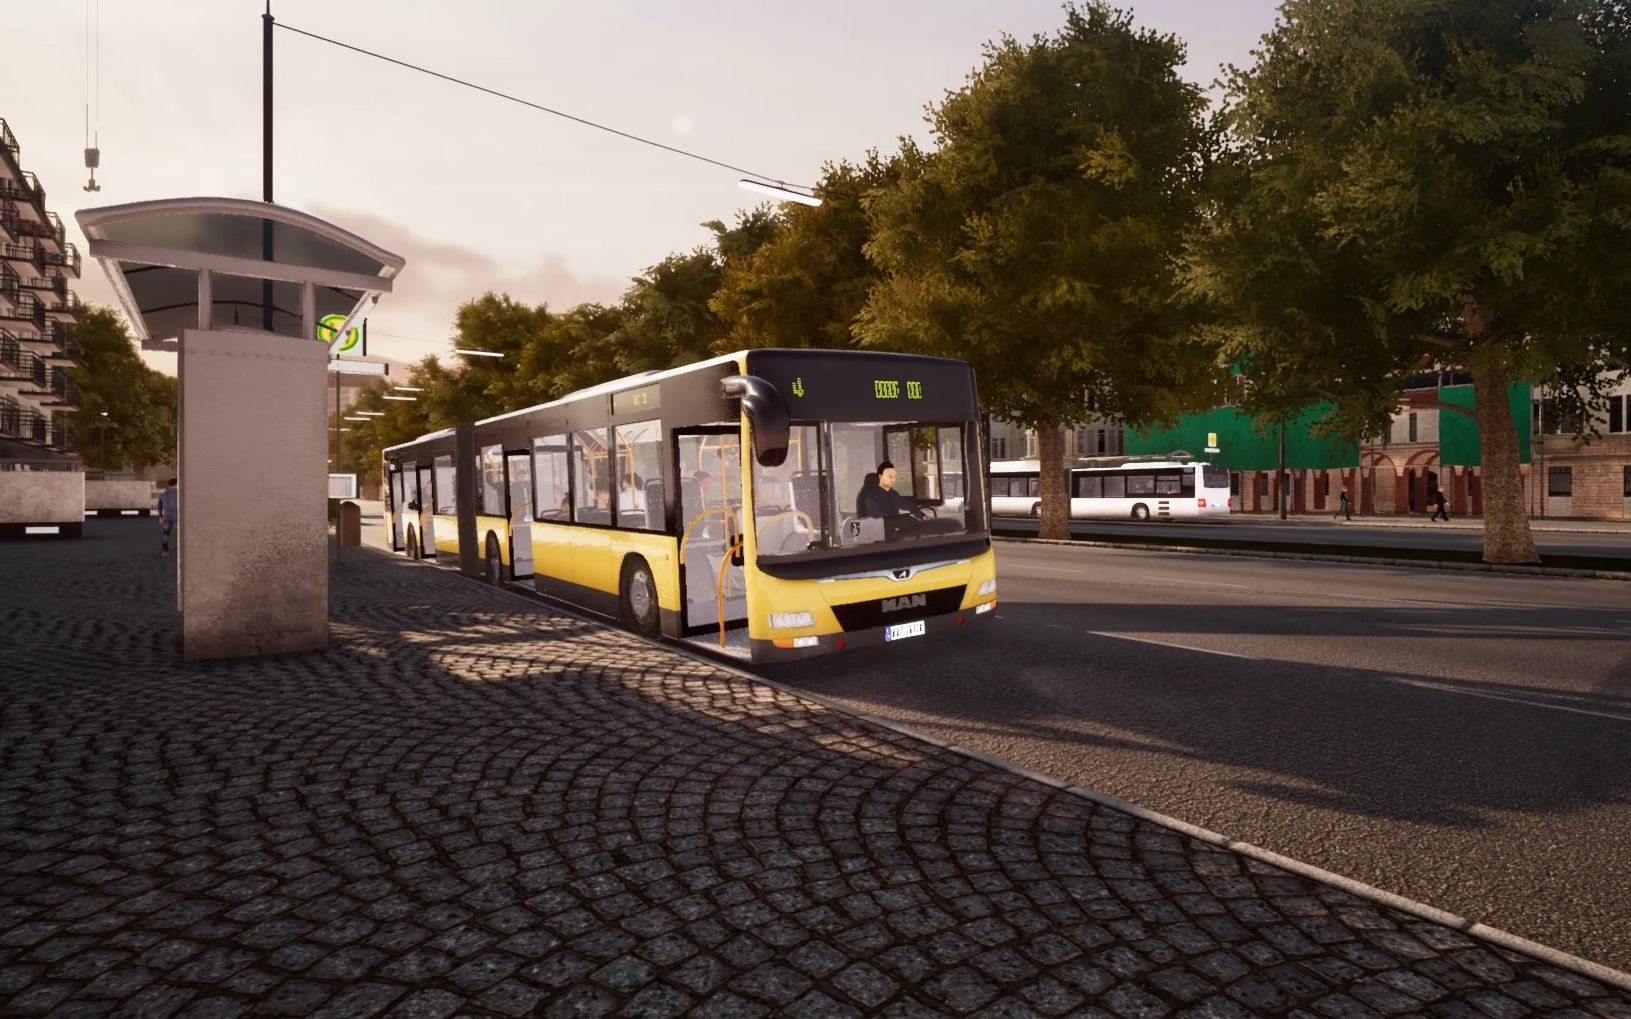 巴士模拟18 驾驶man lions city a40 4门版于反方向4路试运营 bus